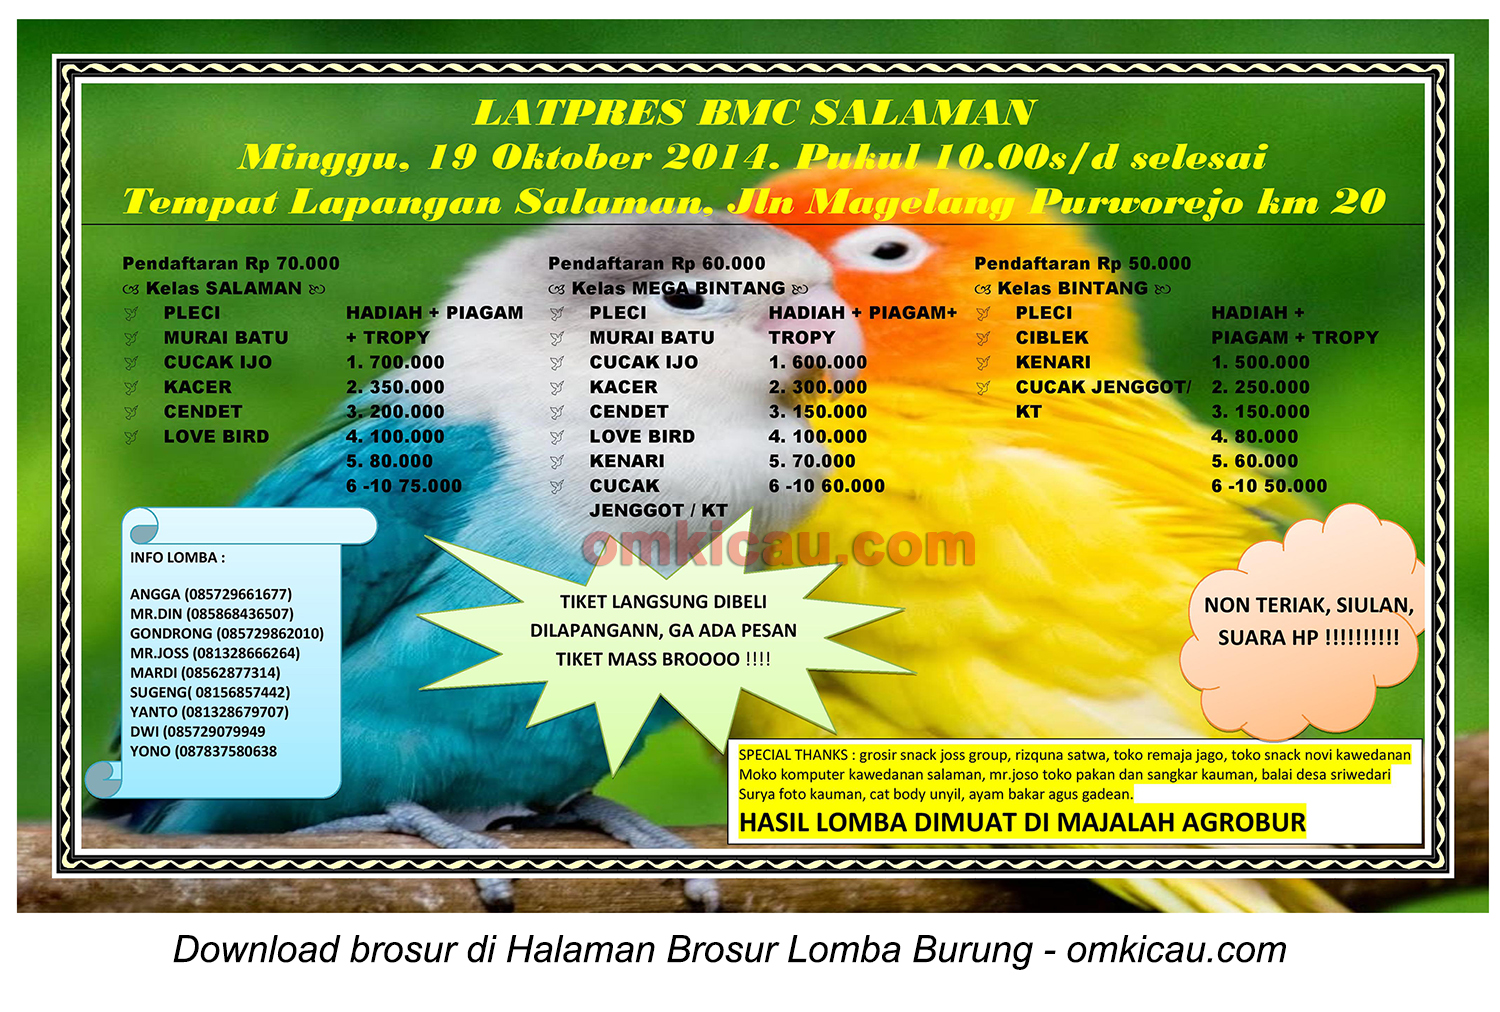 Brosur Latpres Burung Berkicau BMC Salaman, Magelang, 19 Oktober 2014